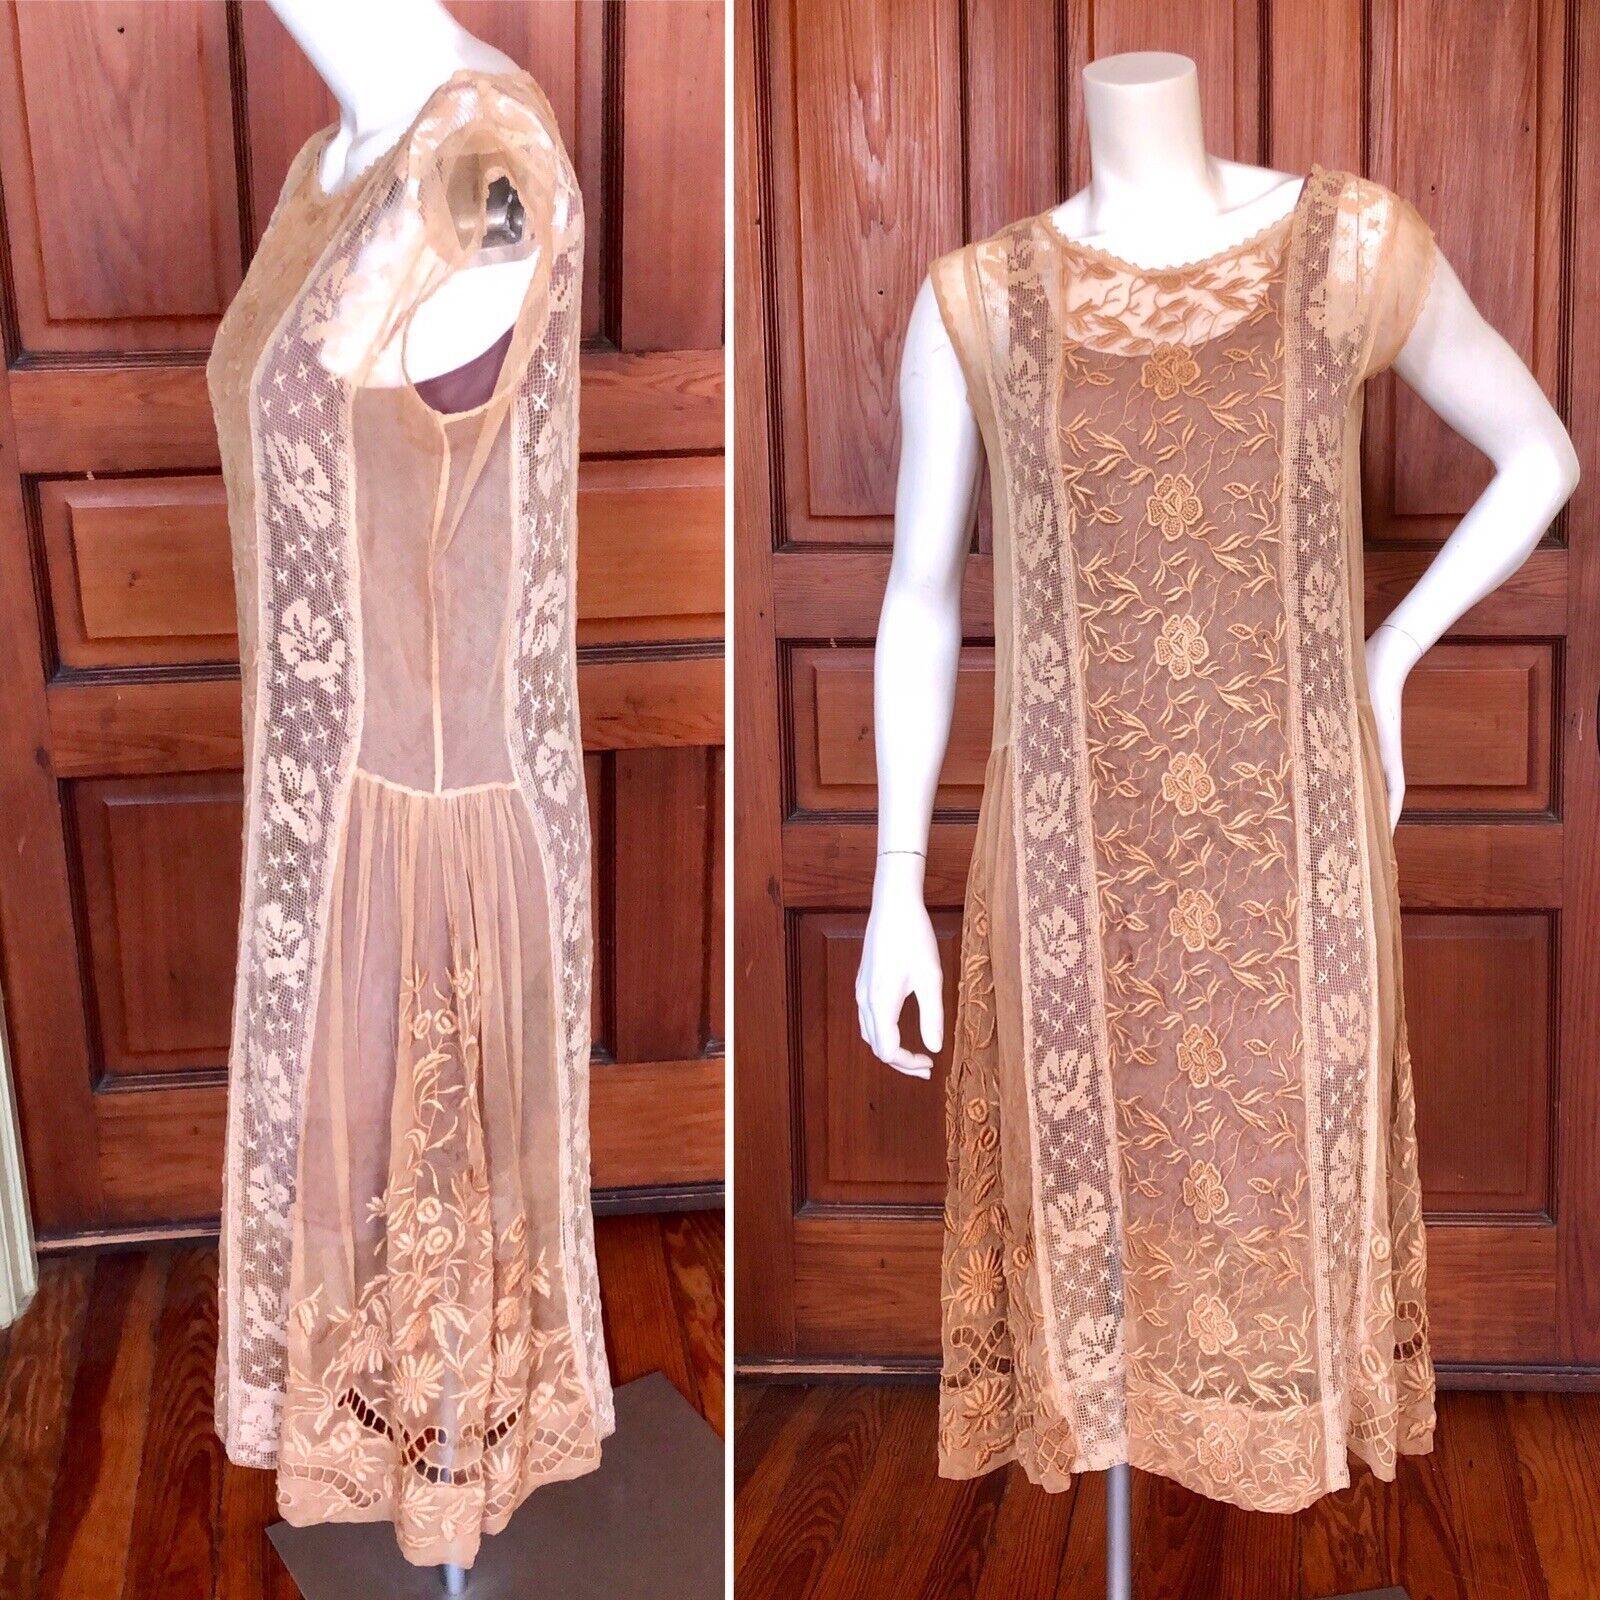 SALE Antique Entirely Lace Dress Edwardian Flapper 1910-1920’s